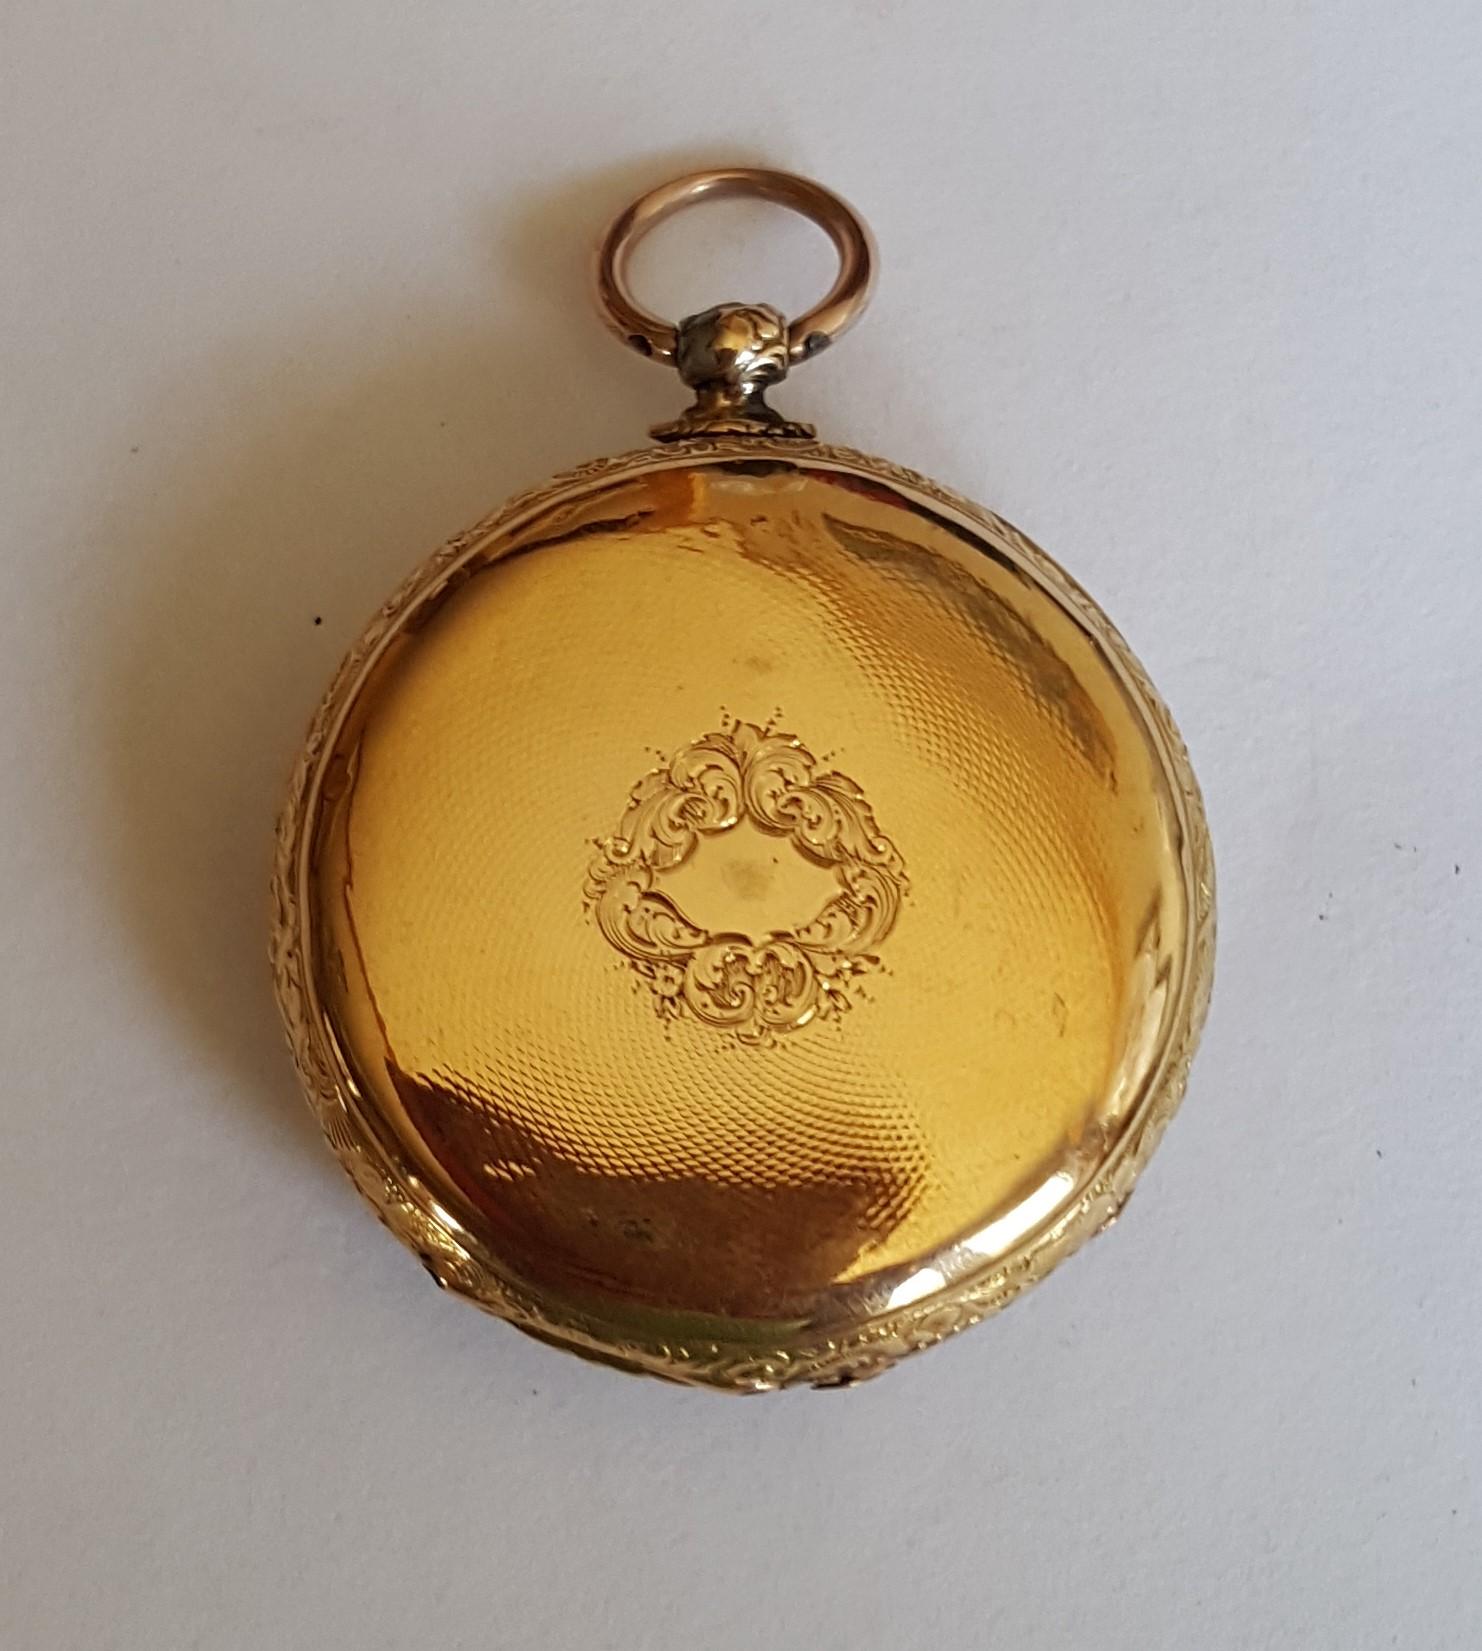 18kt Gelbgold Vintage frühen 19. Jahrhundert Gold Taschenuhr. Key Wind und es funktioniert! 40mm Fall, Guilloche Gesicht, mit einem Bild von einem Schloss mit einer Brücke über Wasser akzentuiert. Römische Ziffern, sehr guter Zustand, kleine Dellen